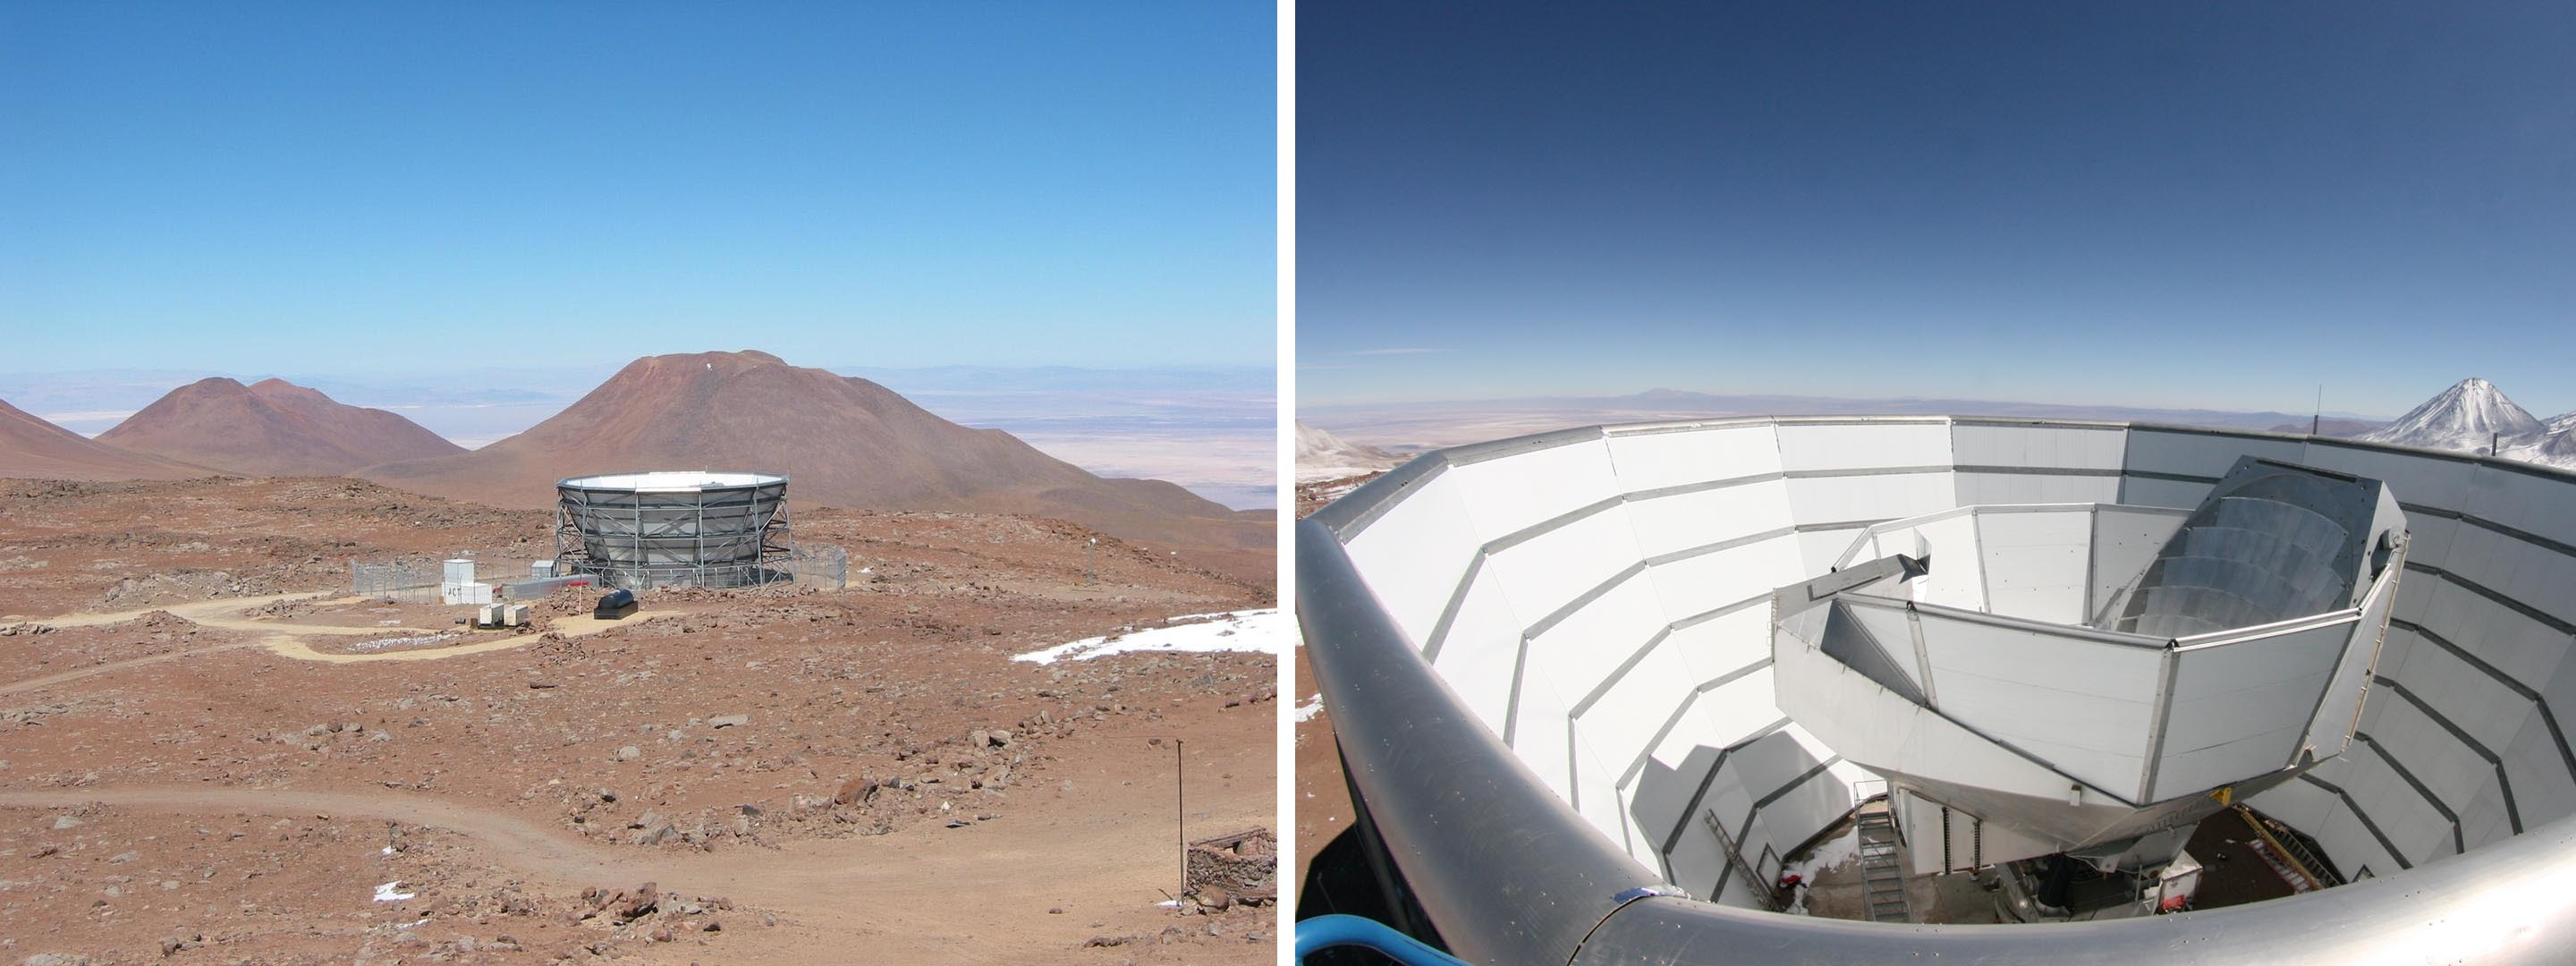 Le télescope ACT, pour Atacama Cosmology Telescope, est installé à 5200 m d'altitude dans les Andes chiliennes. 